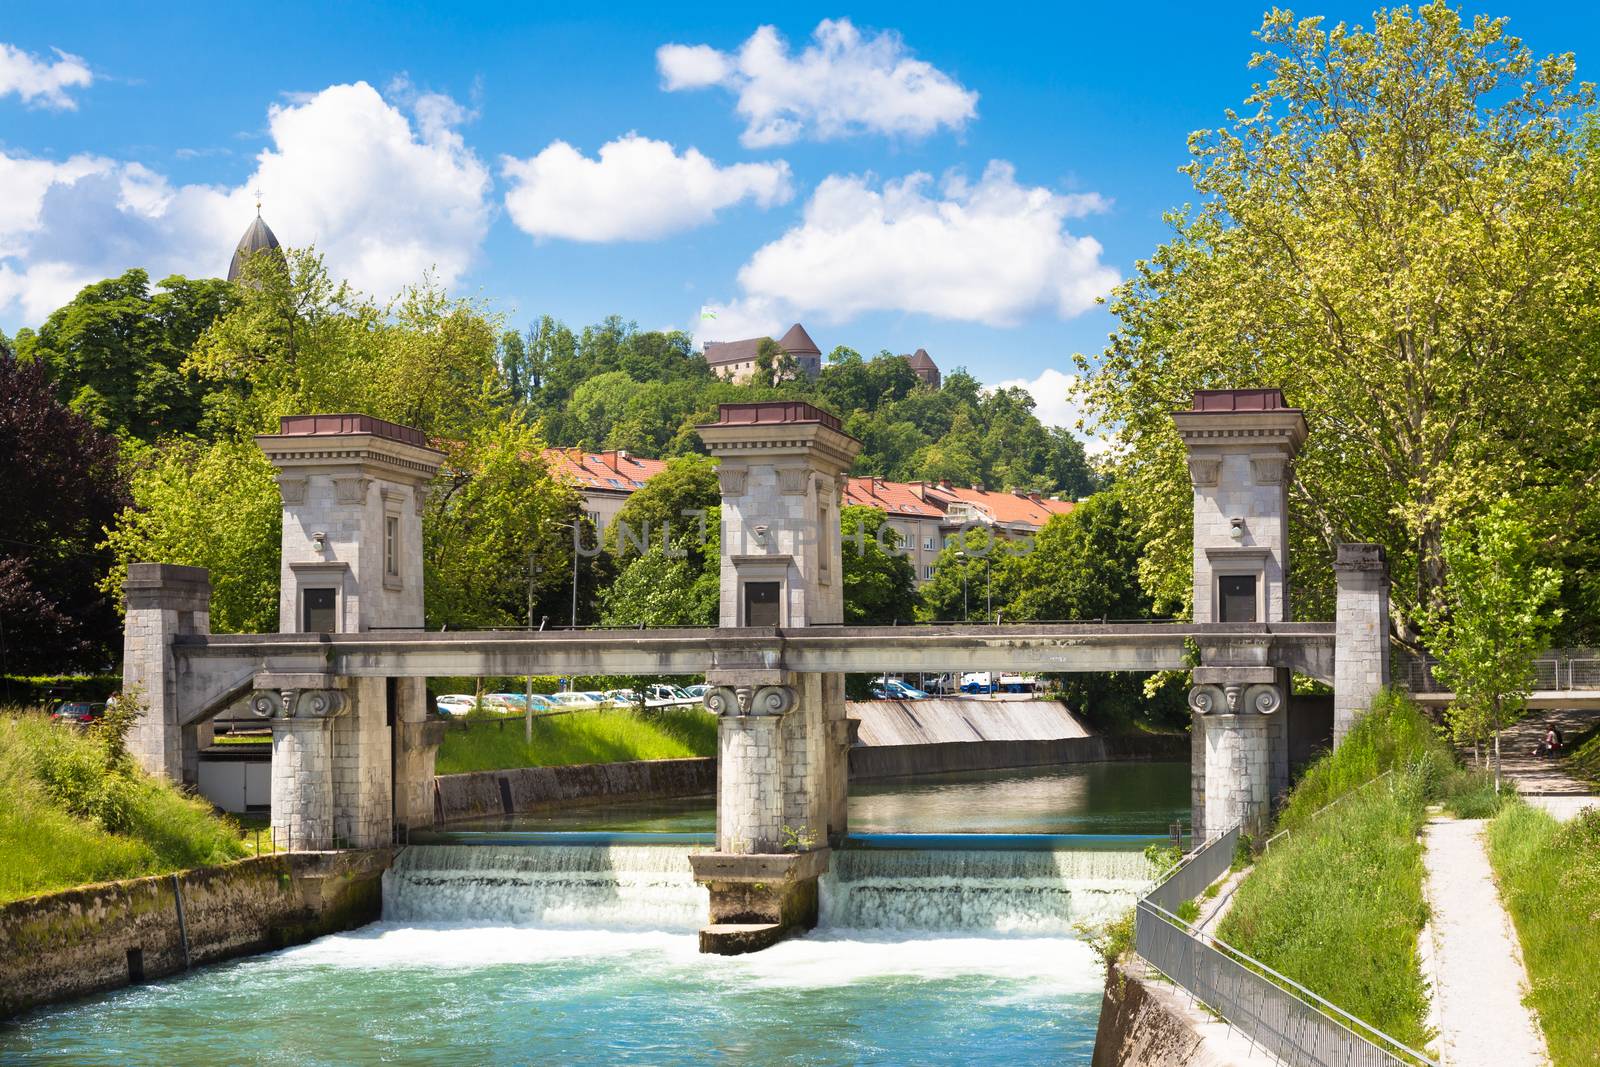 Sluice on the River Ljubljanica, Ljubljana, Slovenia. by kasto